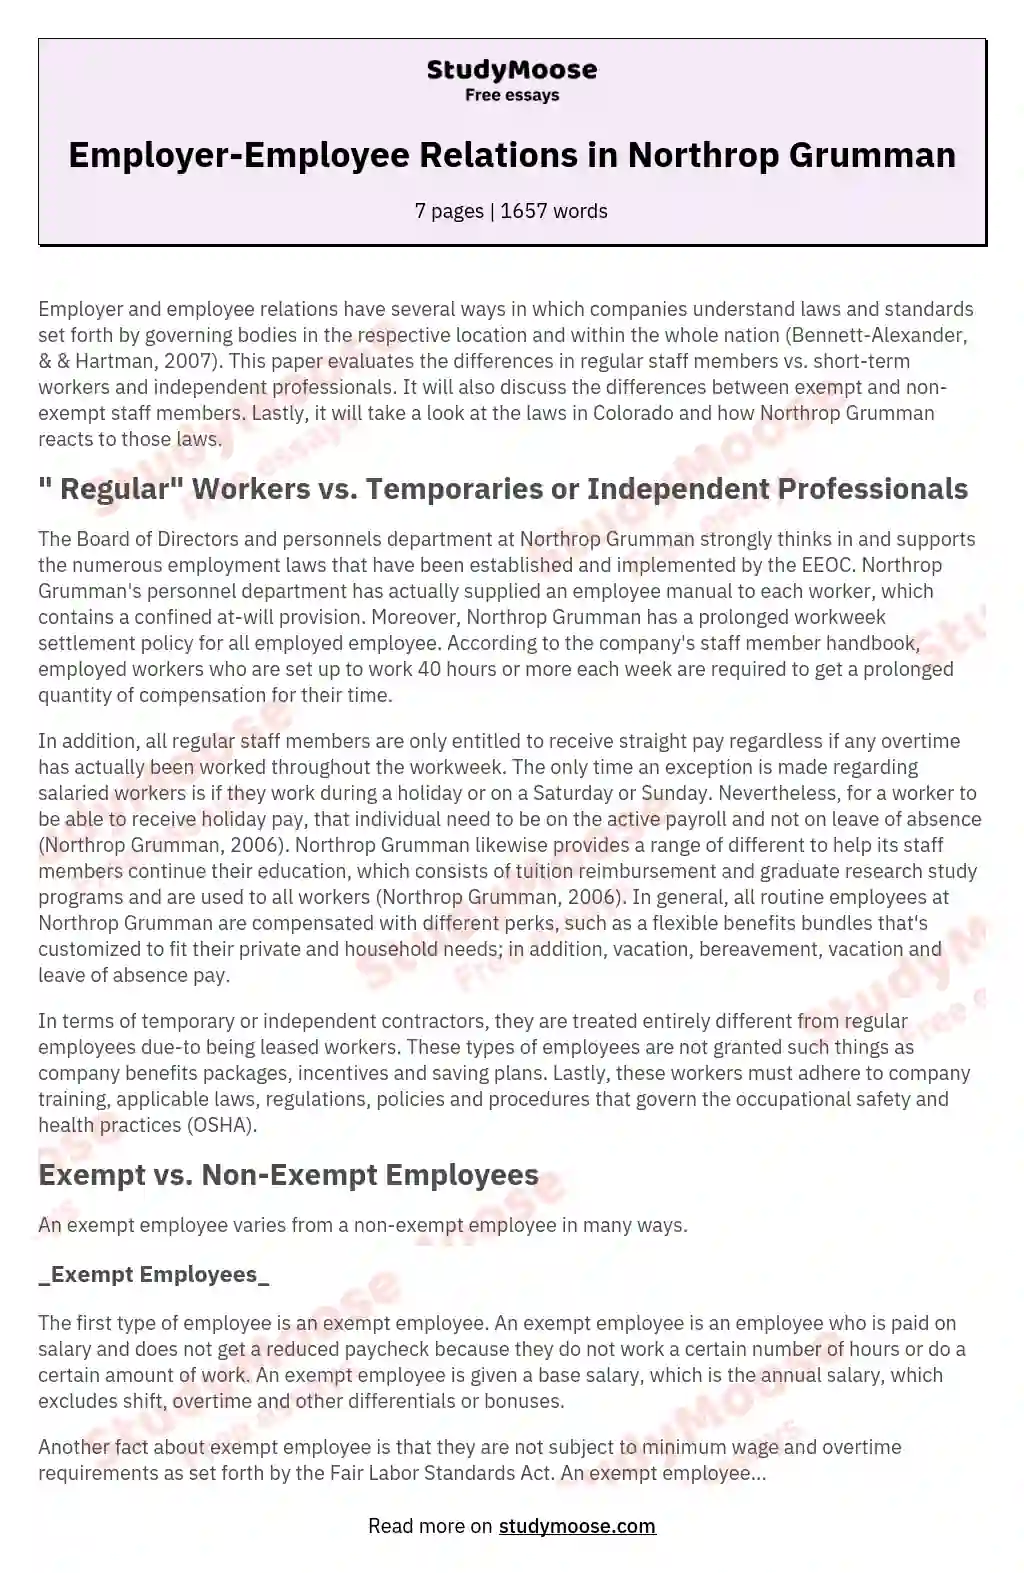 Employer-Employee Relations in Northrop Grumman essay